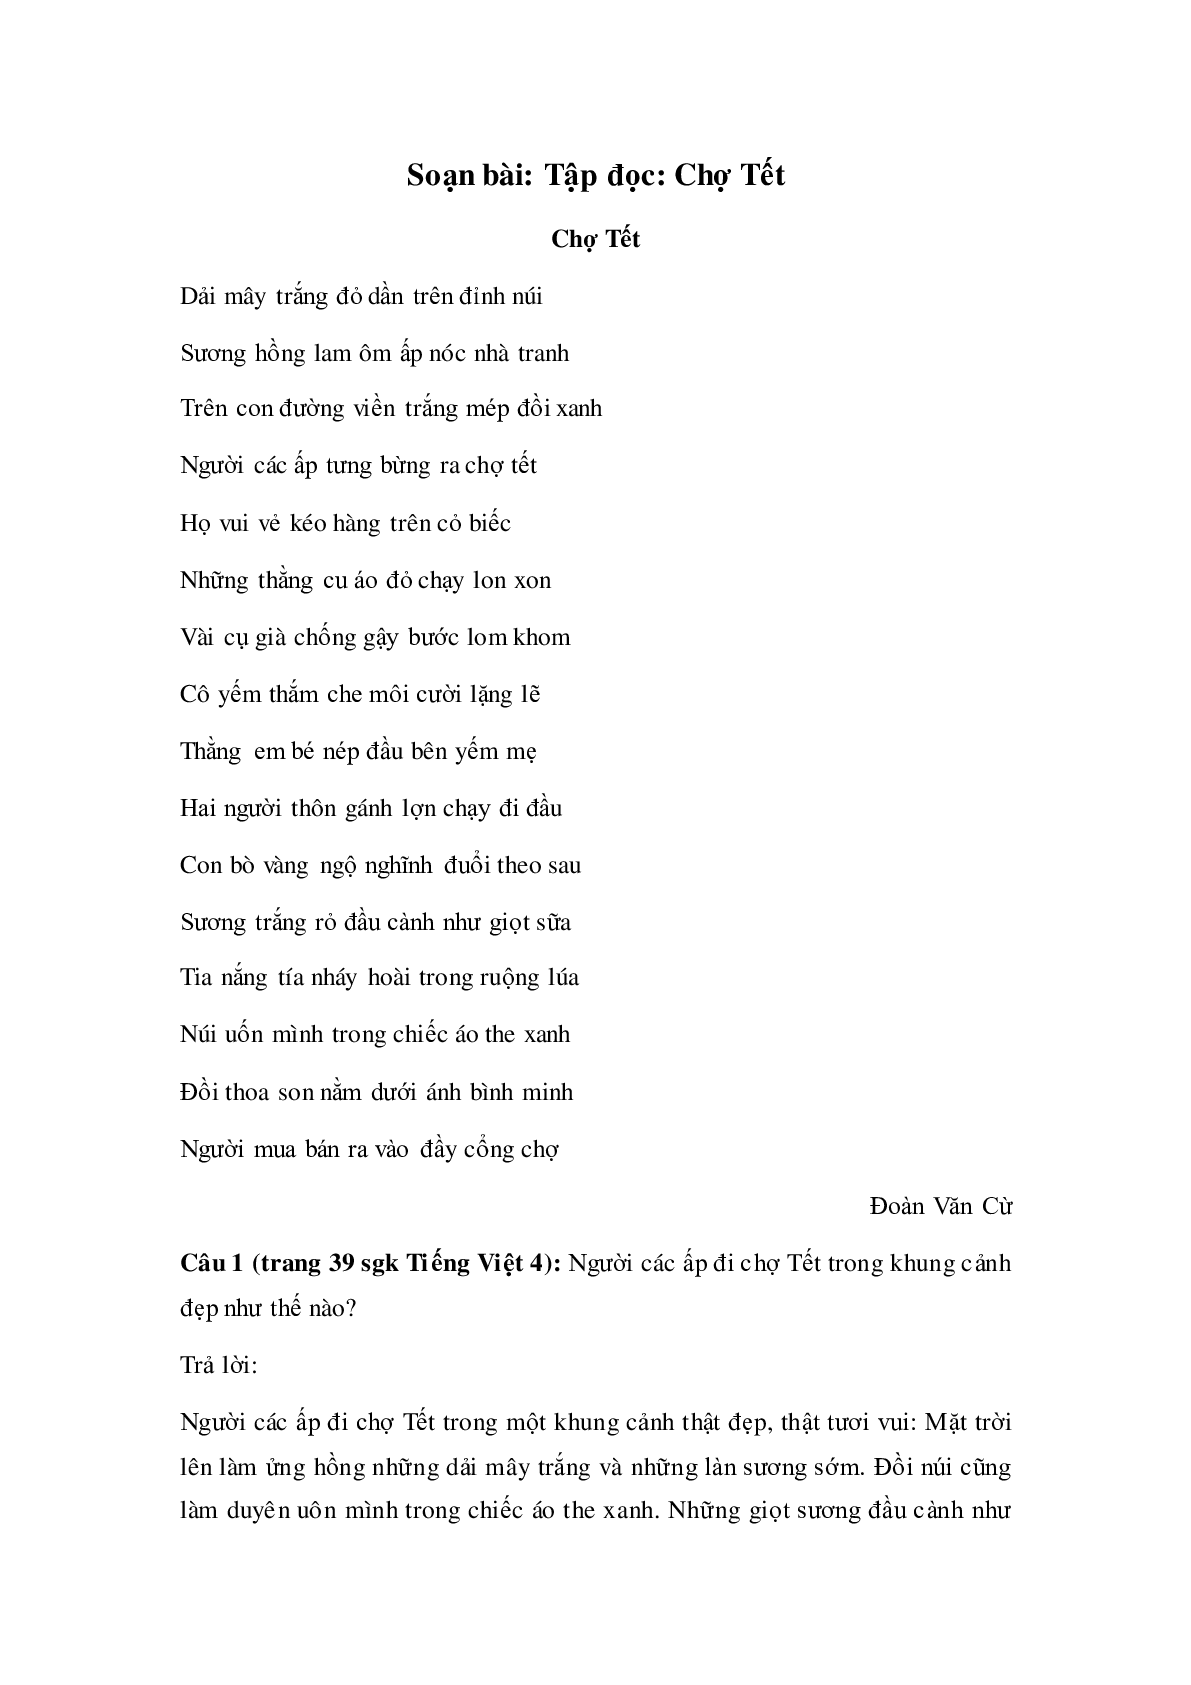 Soạn Tiếng Việt lớp 4: Tập đọc: Chợ Tết mới nhất (trang 1)